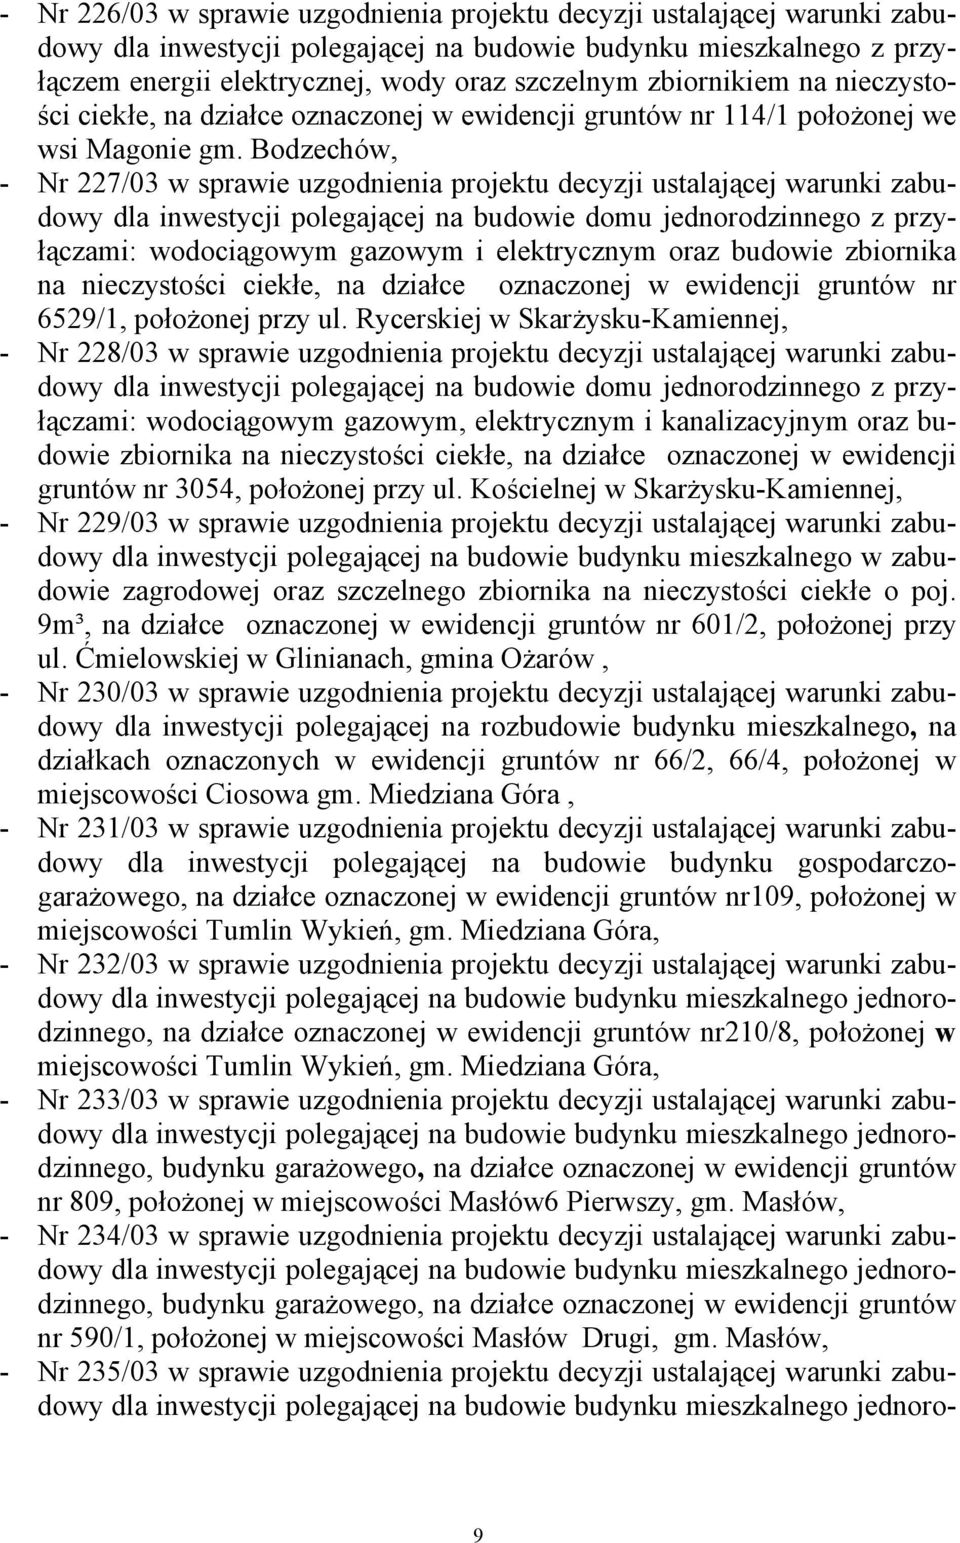 Bodzechów, - Nr 227/03 w sprawie uzgodnienia projektu decyzji ustalającej warunki zabudowy dla inwestycji polegającej na budowie domu jednorodzinnego z przyłączami: wodociągowym gazowym i